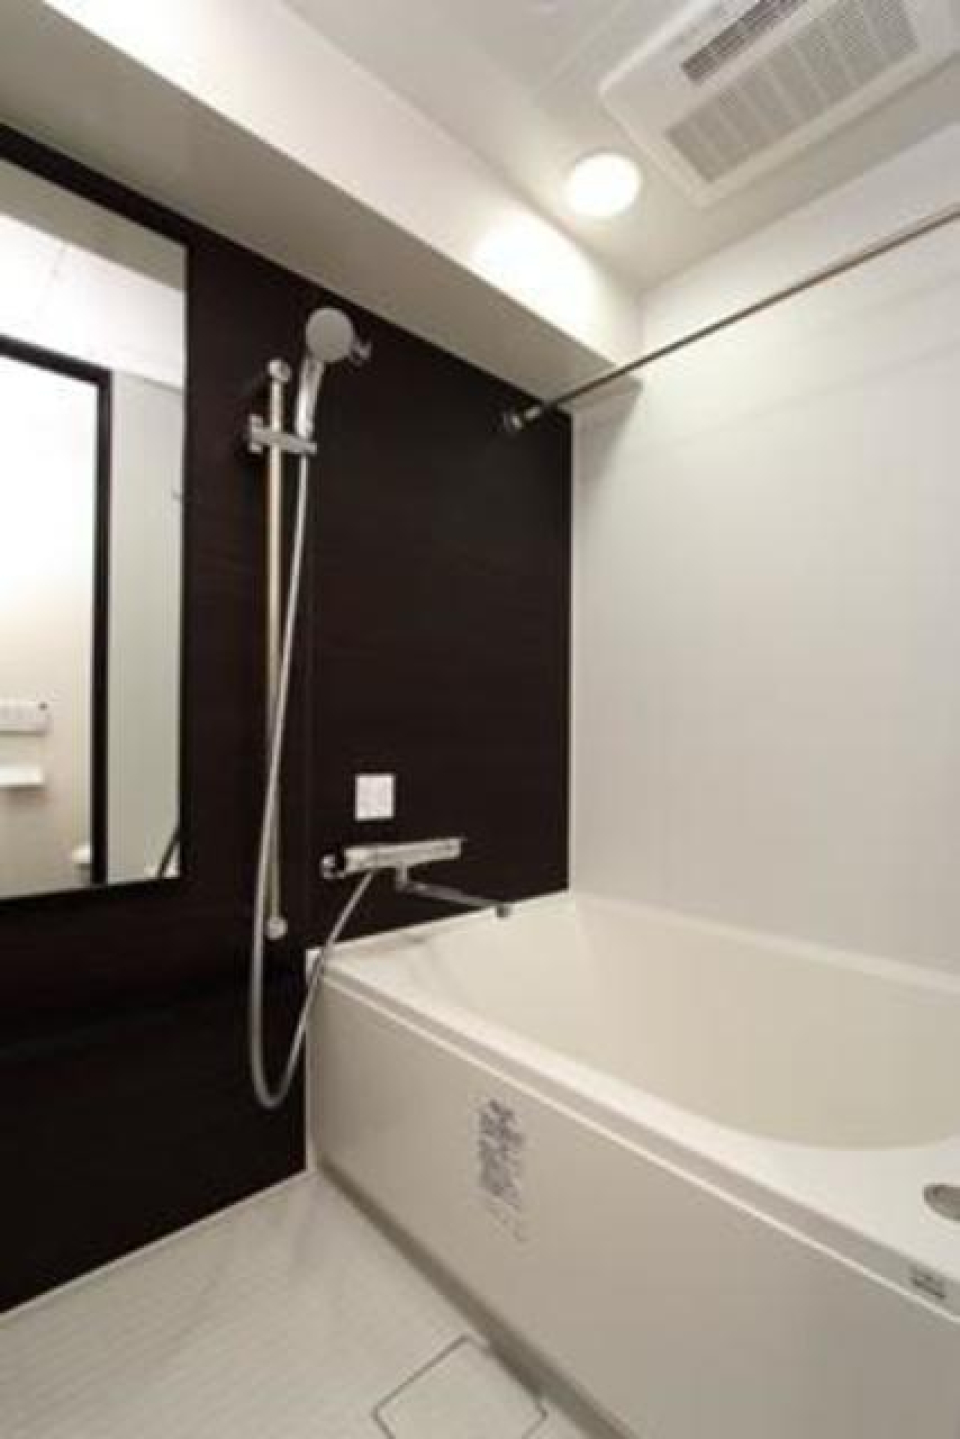 ダークトーンのパネルが落ち着いた浴室を演出しています。※写真は同タイプ住戸です。